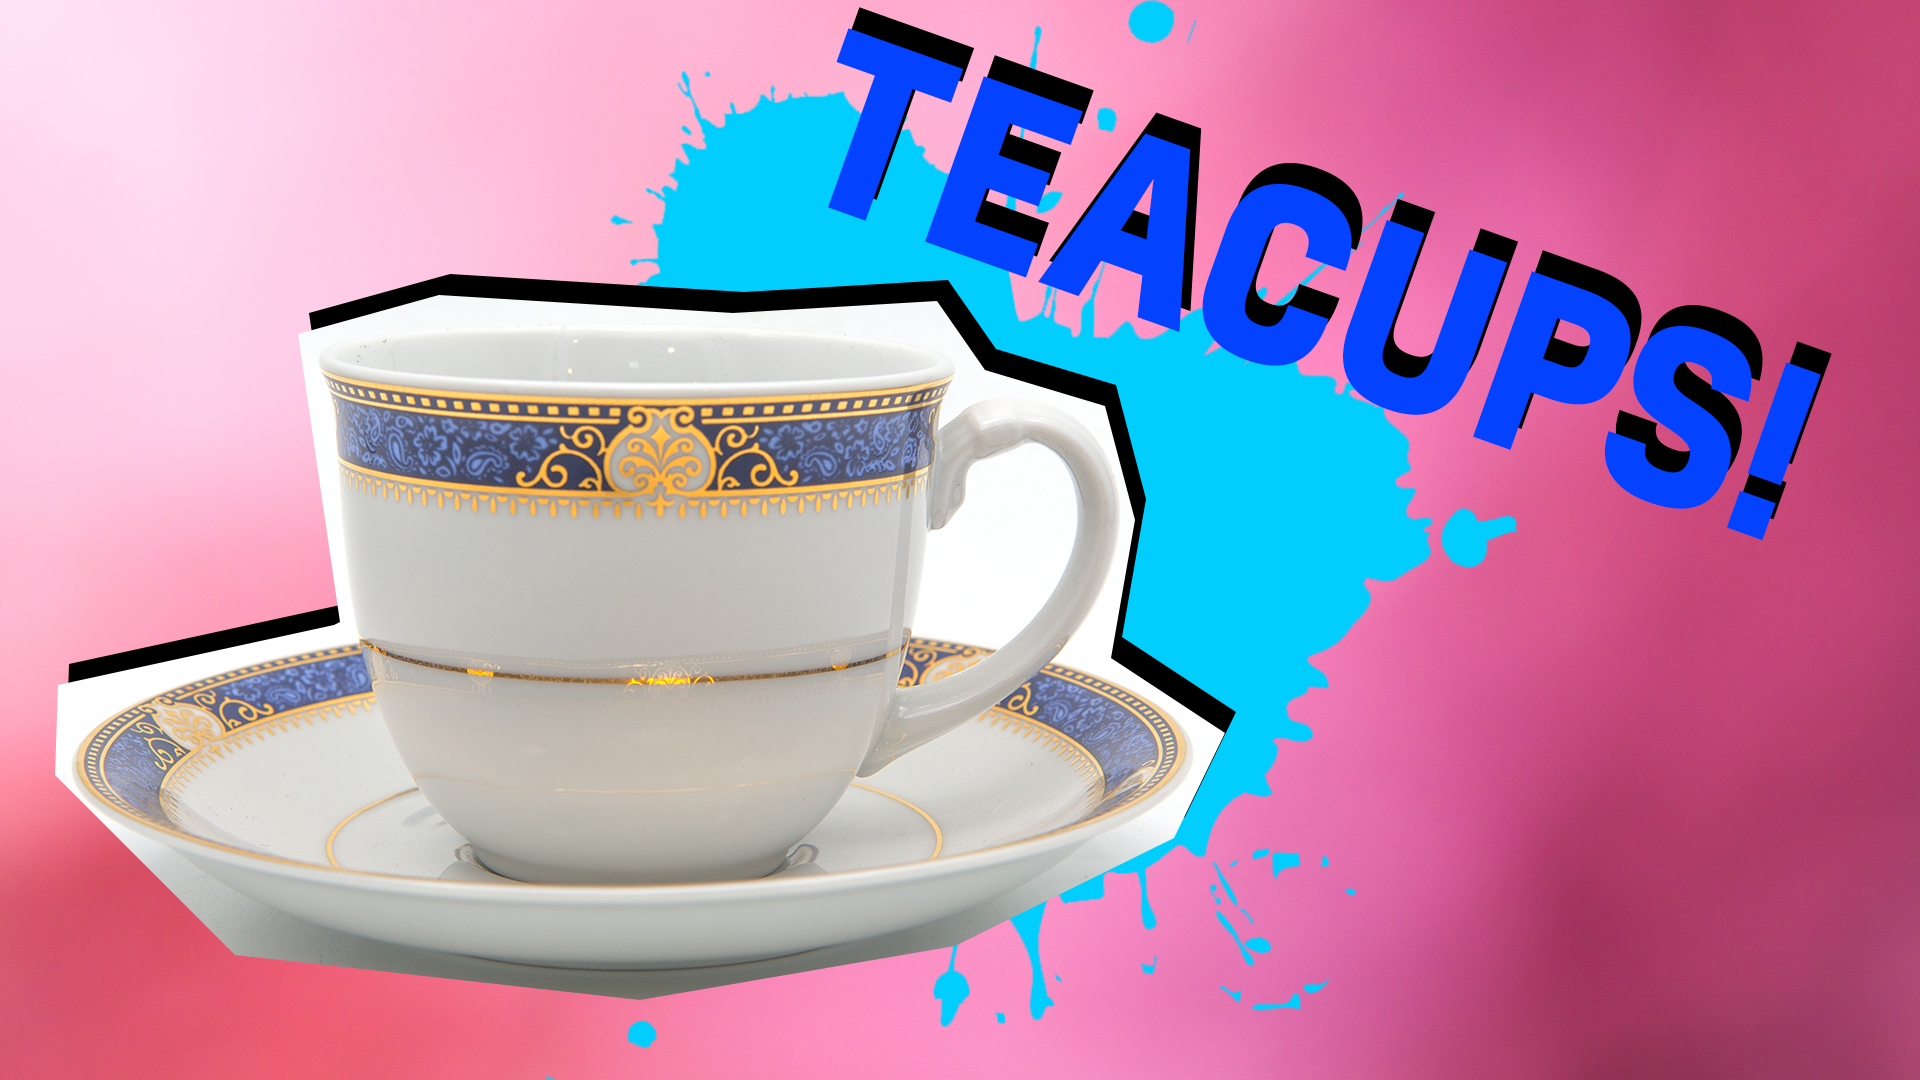 Teacups result